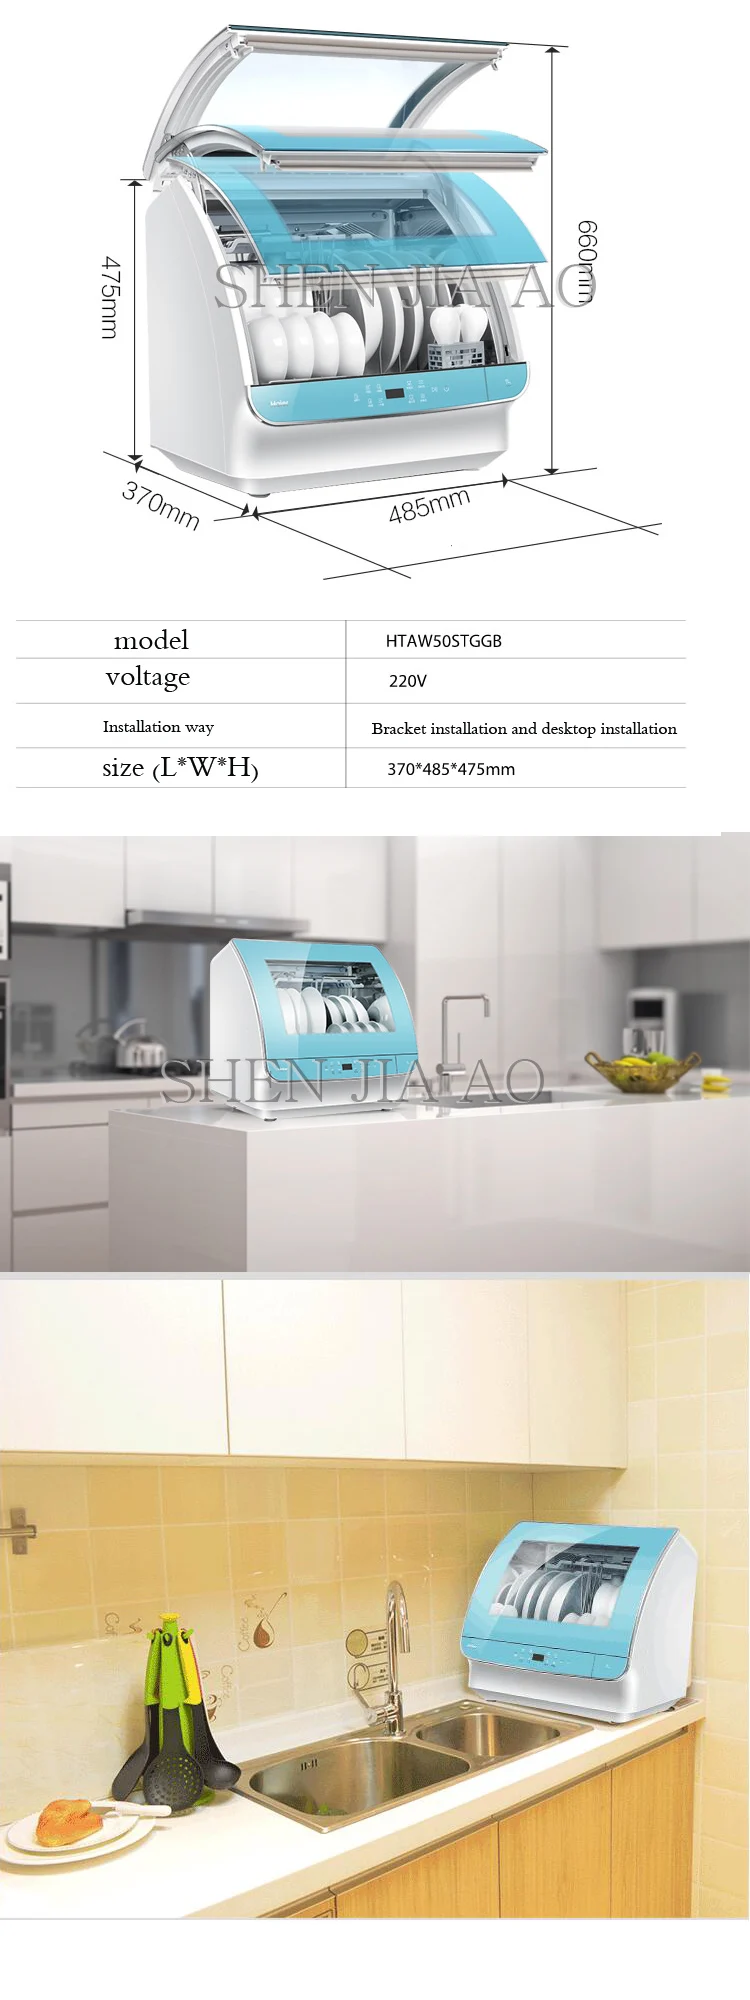 Автоматический домашний посудомоечная машина сушильная посудомоечная машина посуда для стерилизации чаши промывочная машина HTAW50STGGB 1 шт